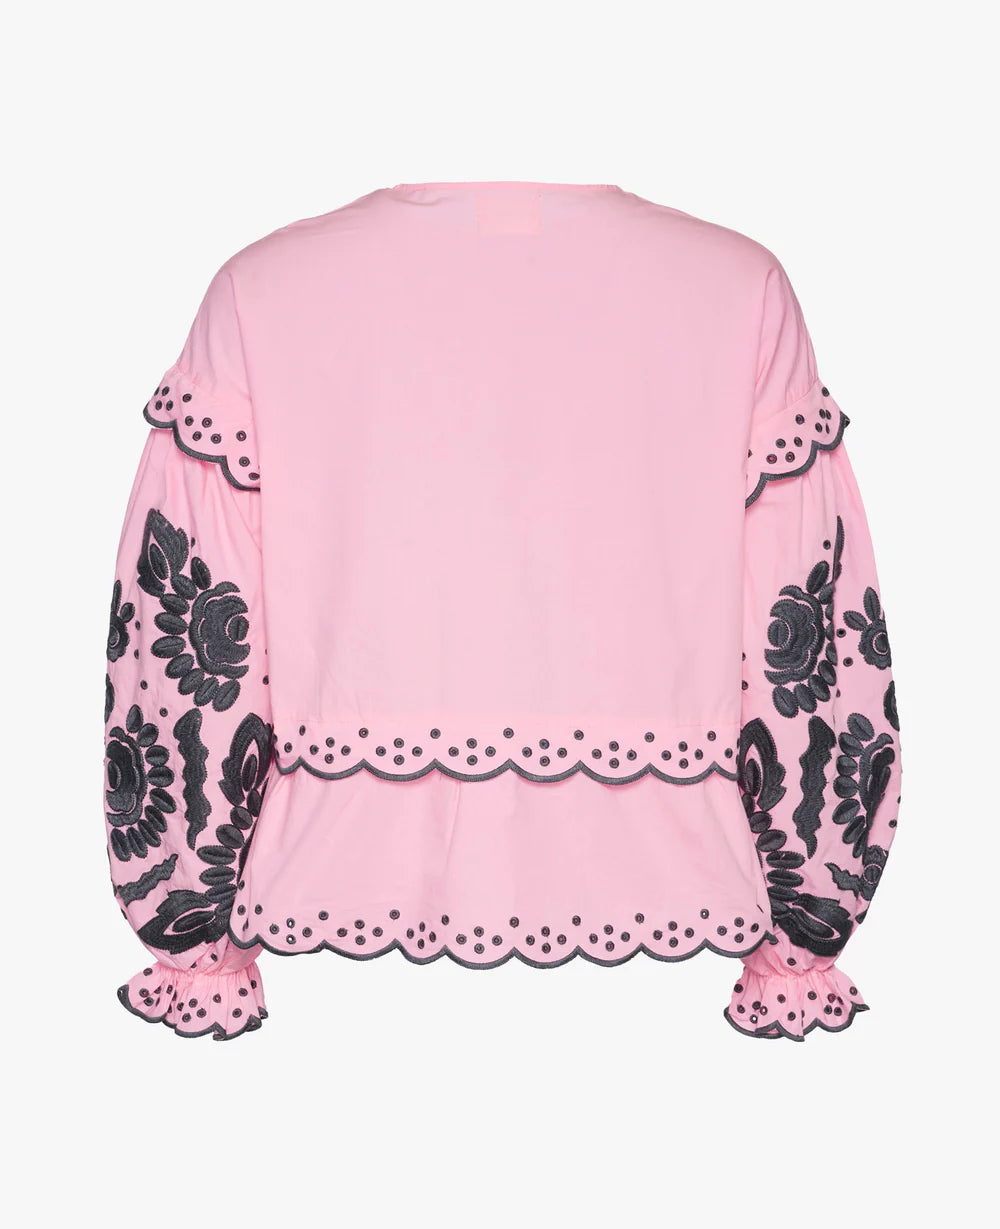 Sissel Edelbo Mathilda Organic Cotton Top Pink